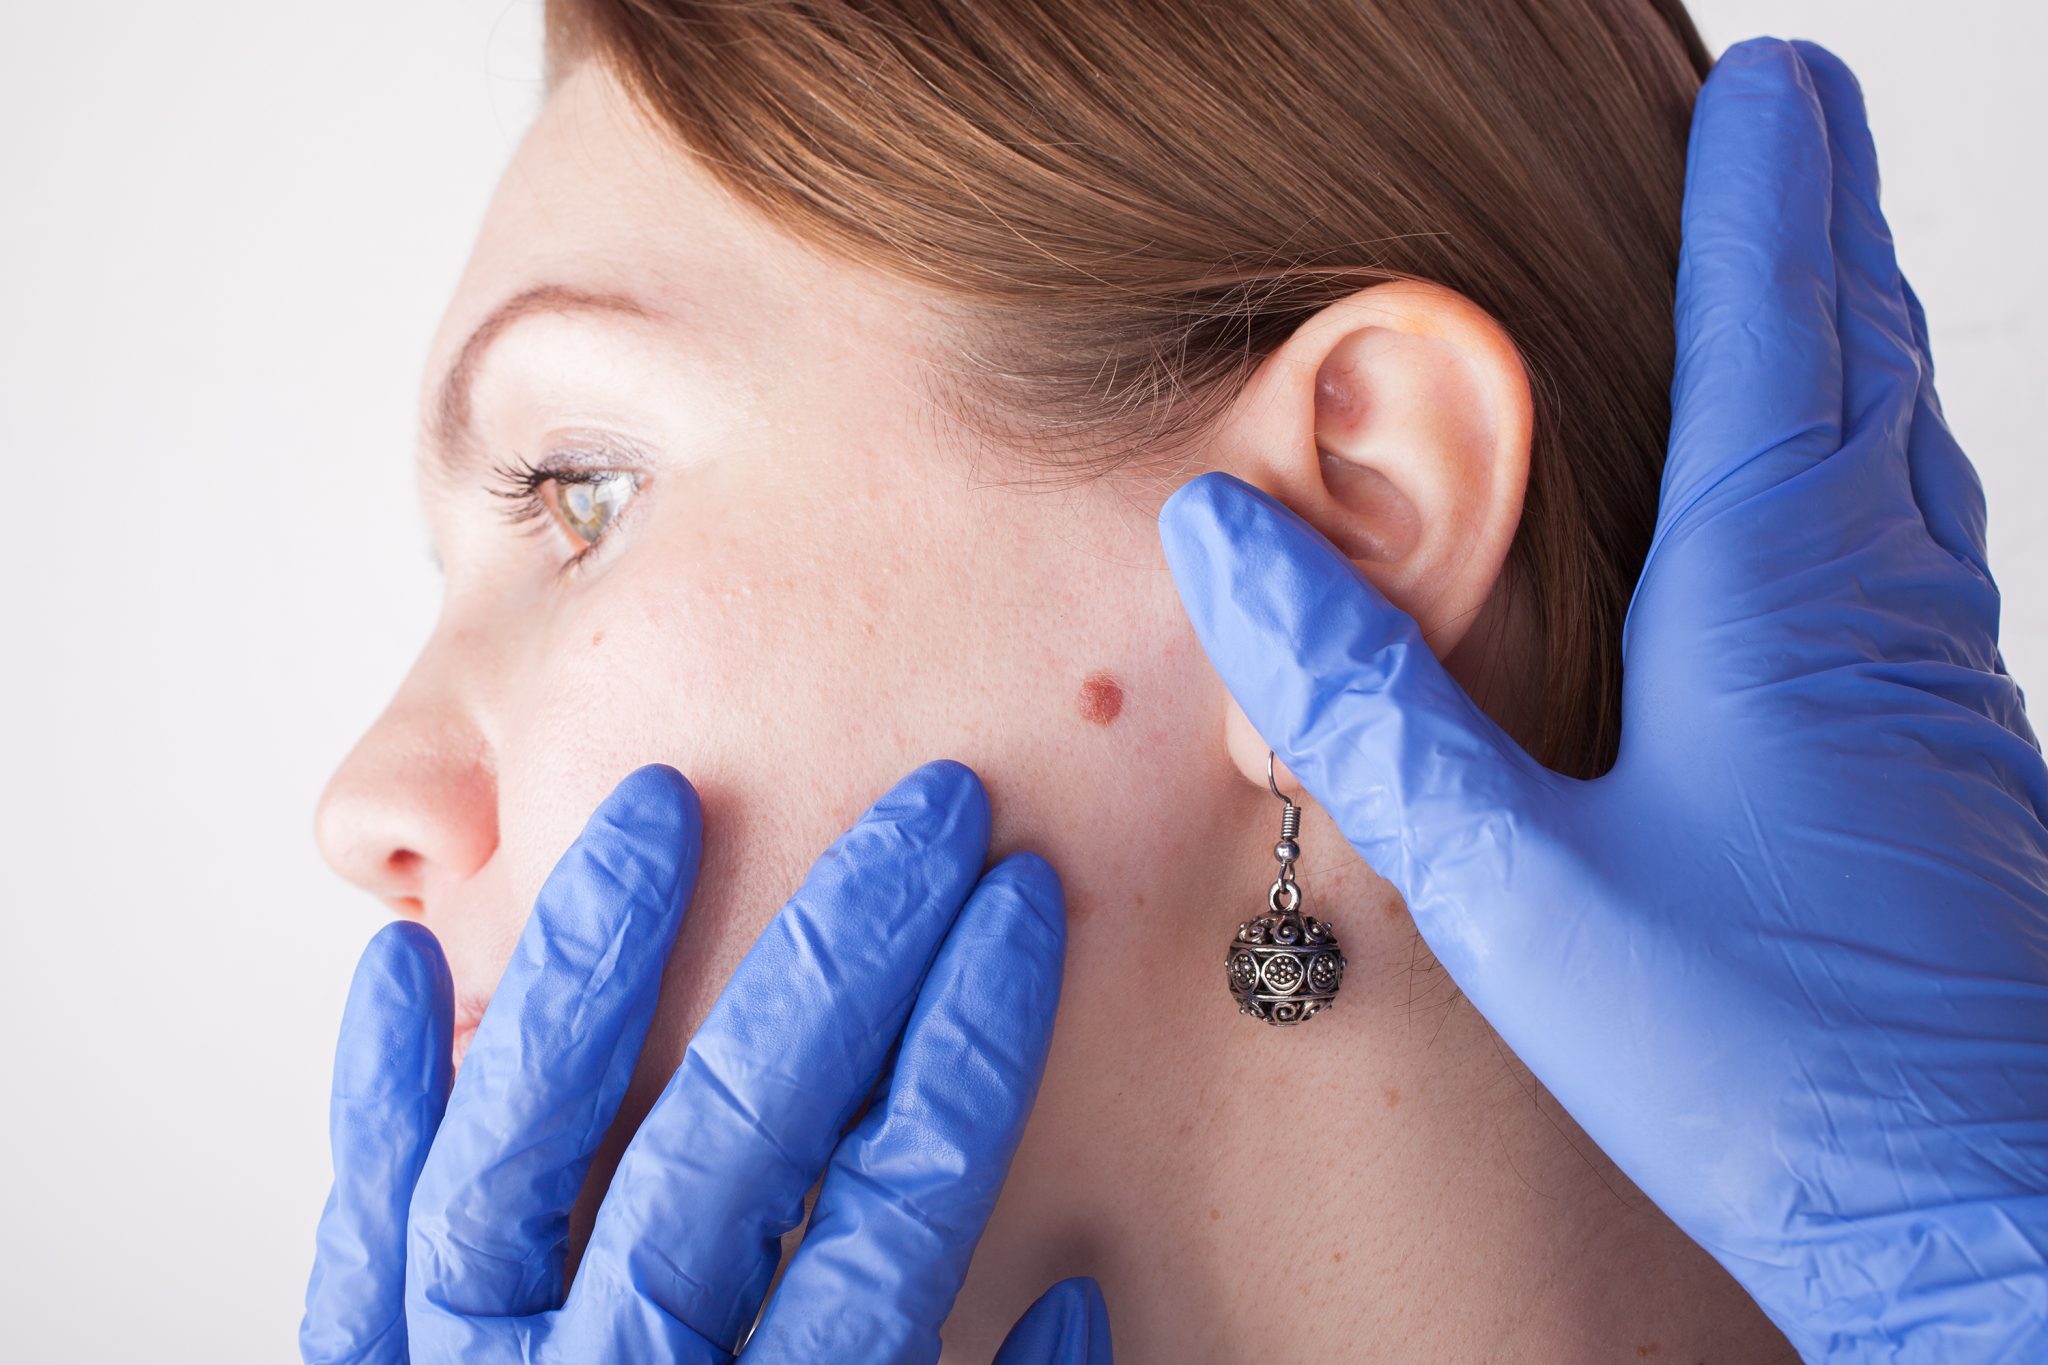 Tratamiento para eliminación de verrugas u otras lesiones de la piel facial